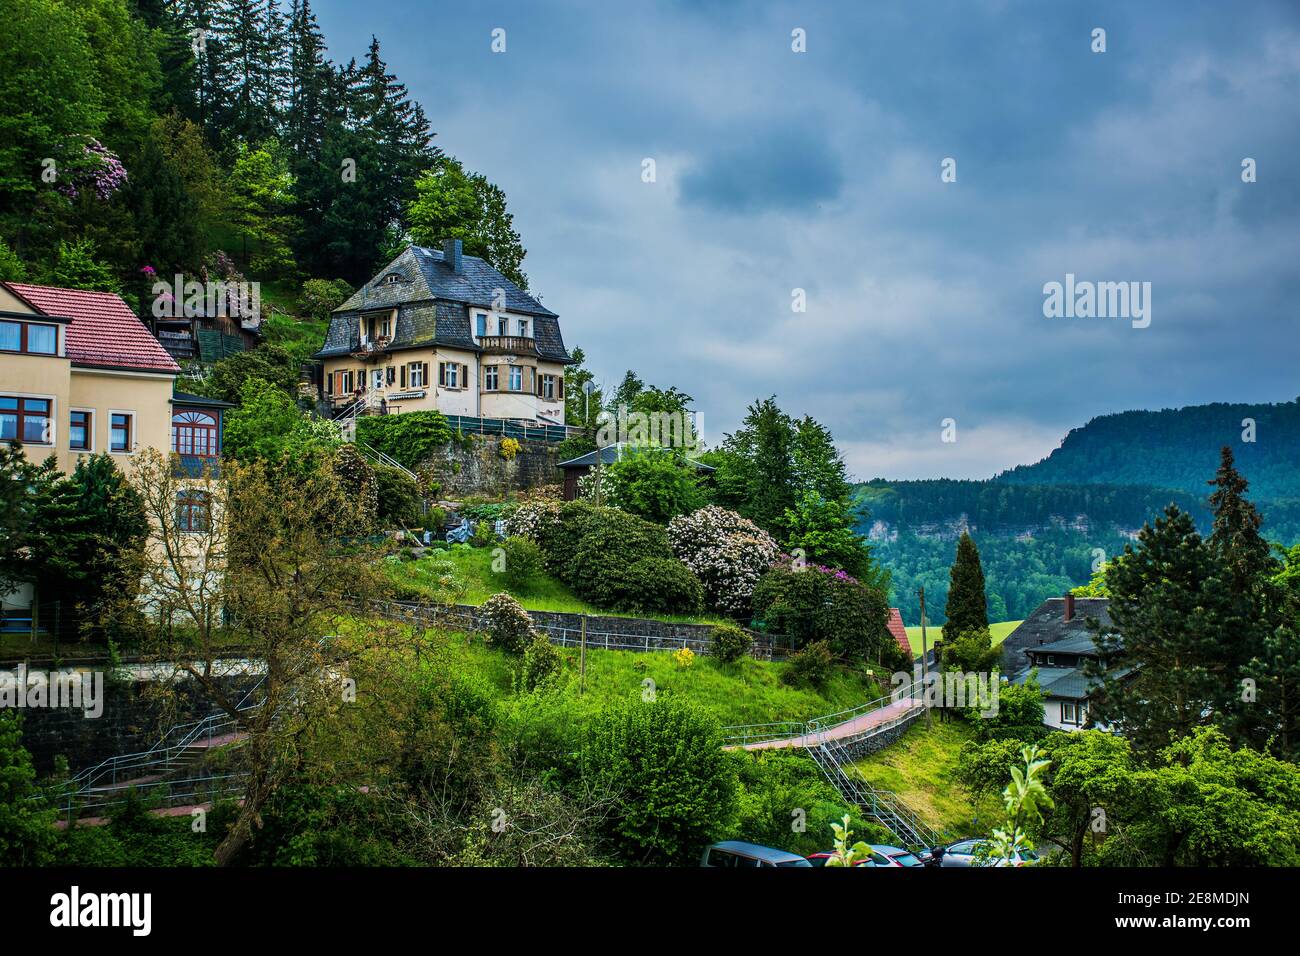 18 maggio 2019 Rathen, Sassonia, Germania - stretti sentieri di montagna e accoglienti case residenziali a Kurort Rathen, piccola città sul fiume Elba, di fronte a Bastei Foto Stock